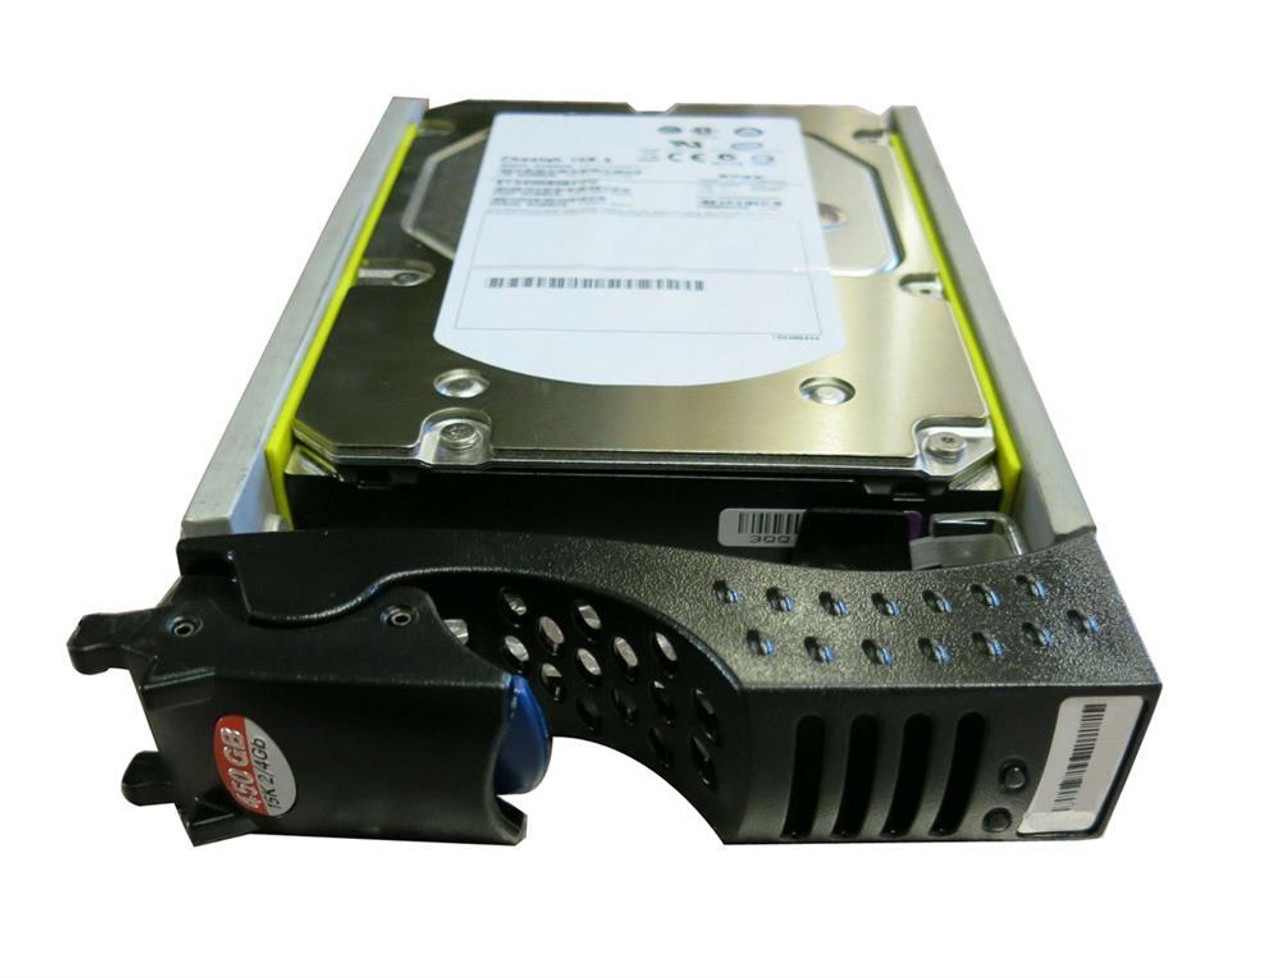 CX-4G15-450TU EMC 450GB 15000RPM Fibre Channel 4Gbps Hot Swap 3.5-inch Internal Hard Drive